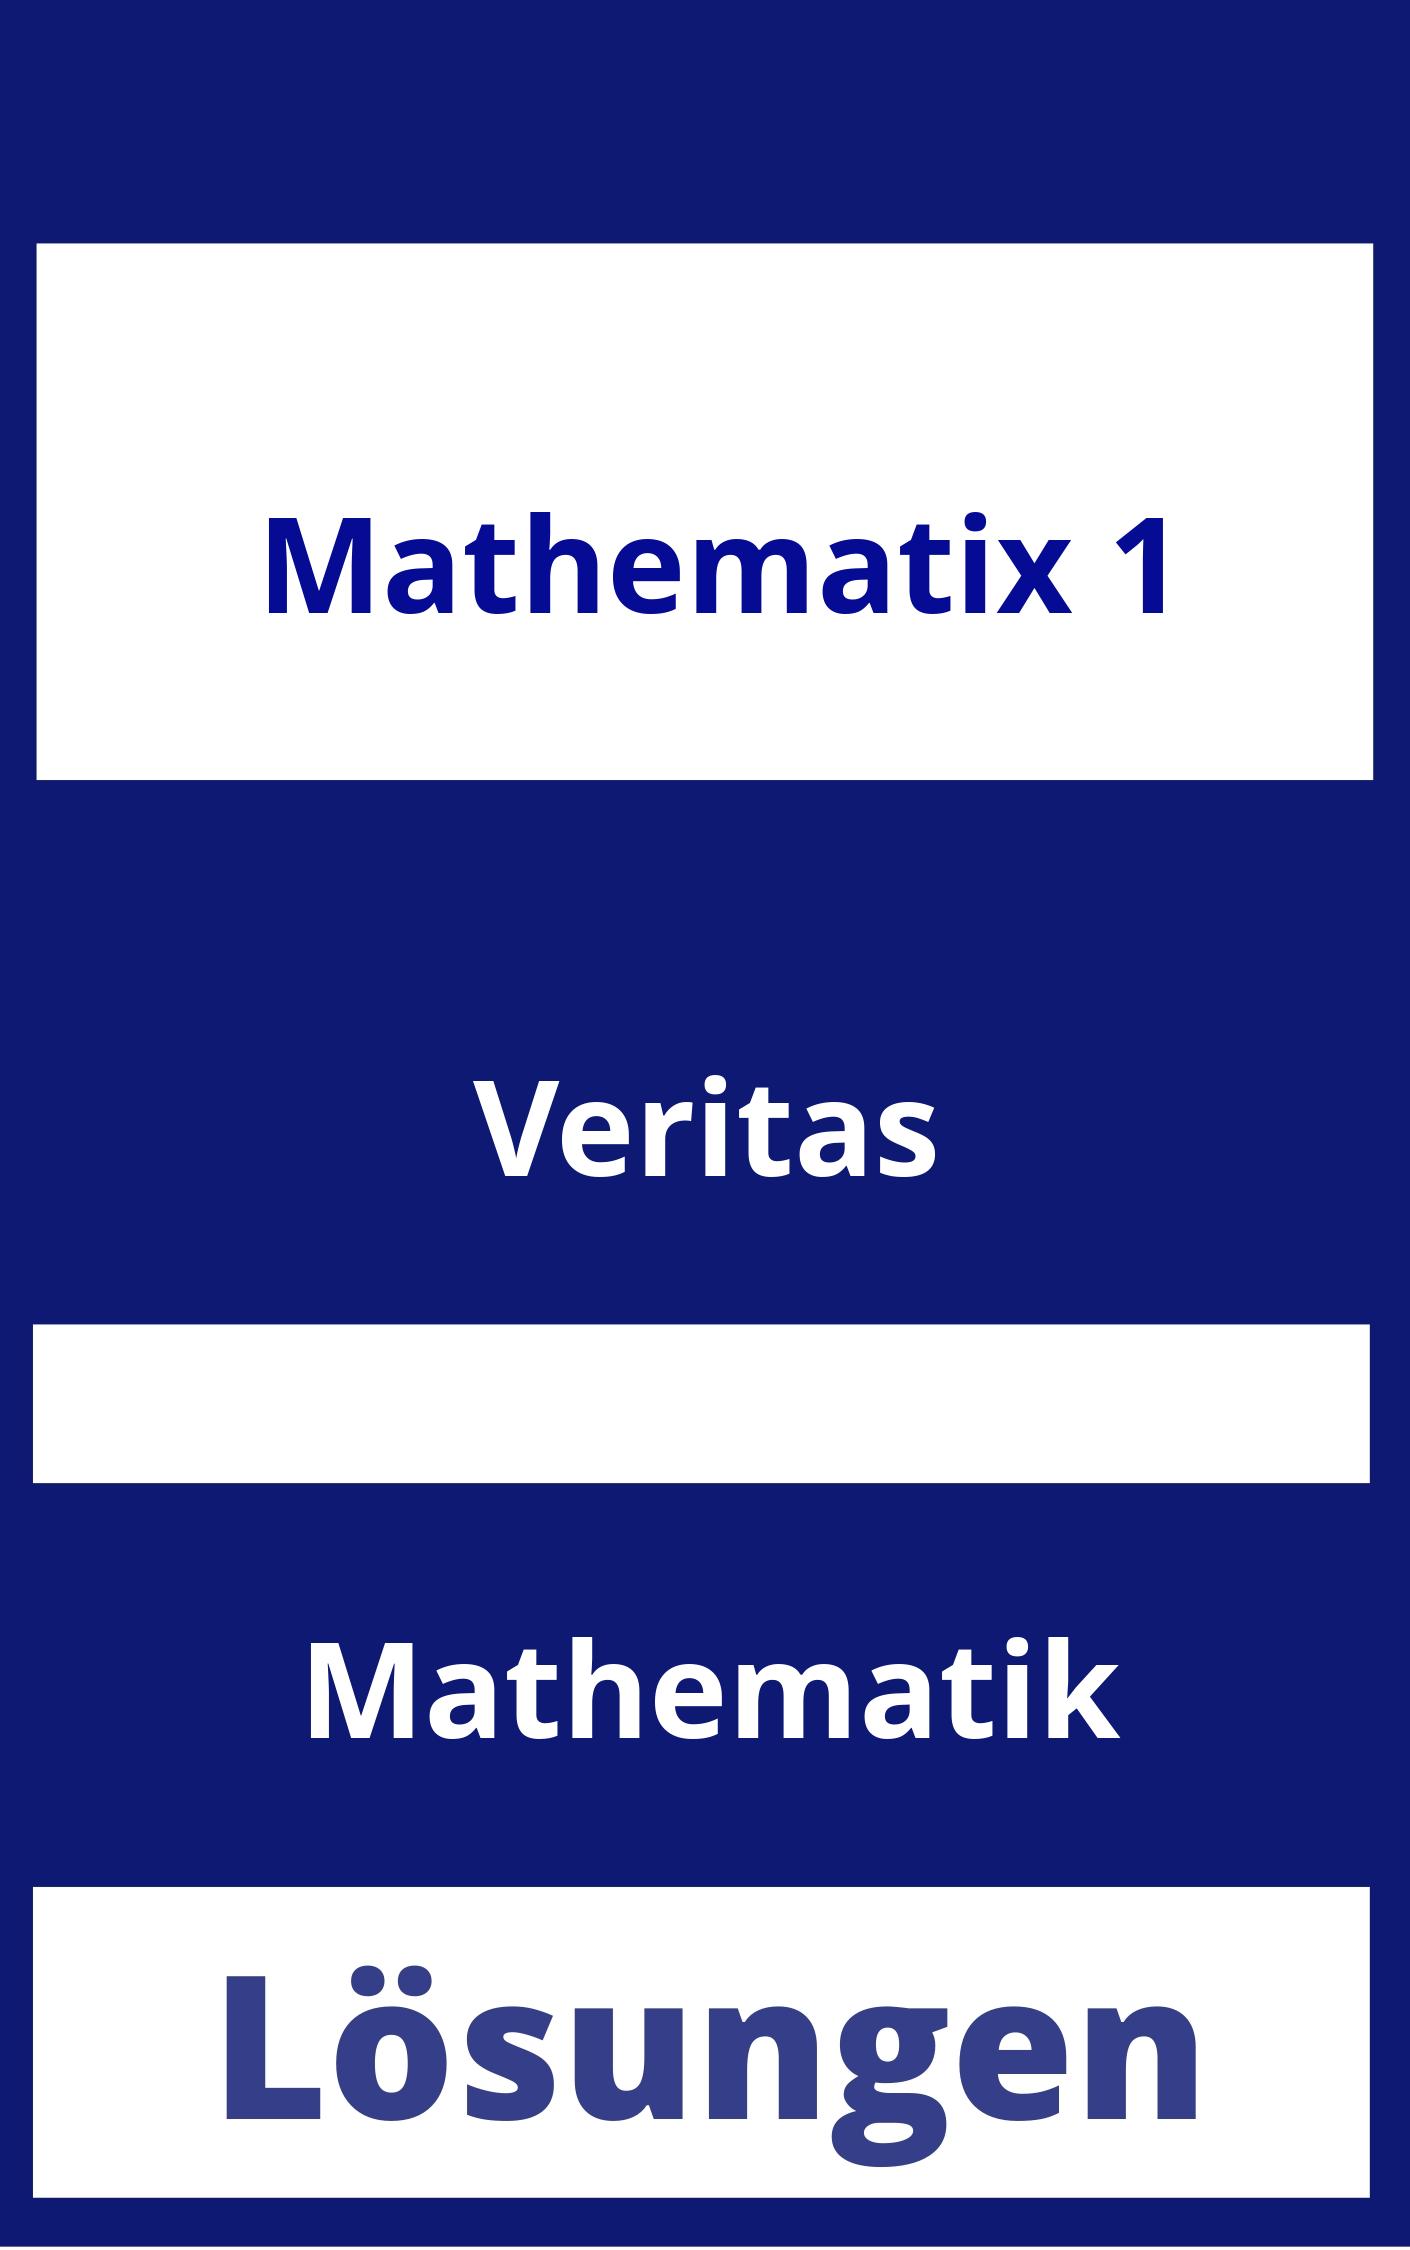 Mathematix 1 Lösungen PDF